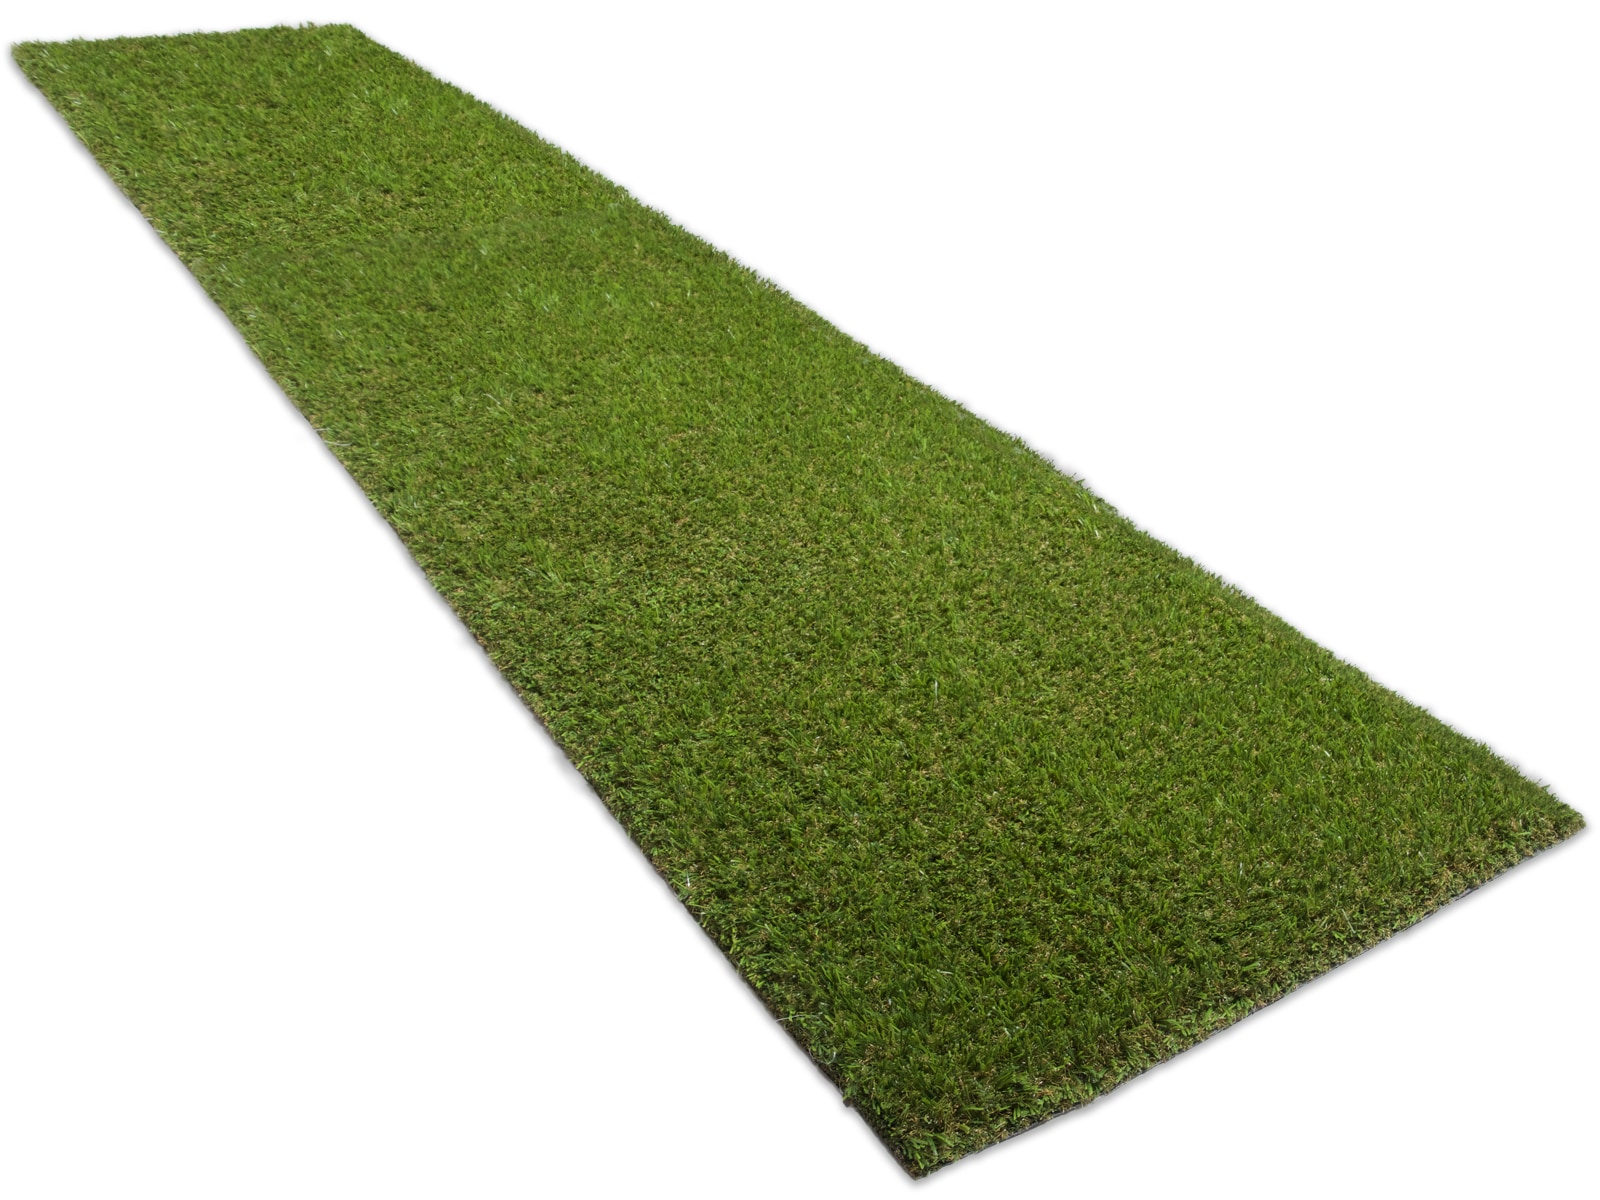 Artificial Grass at